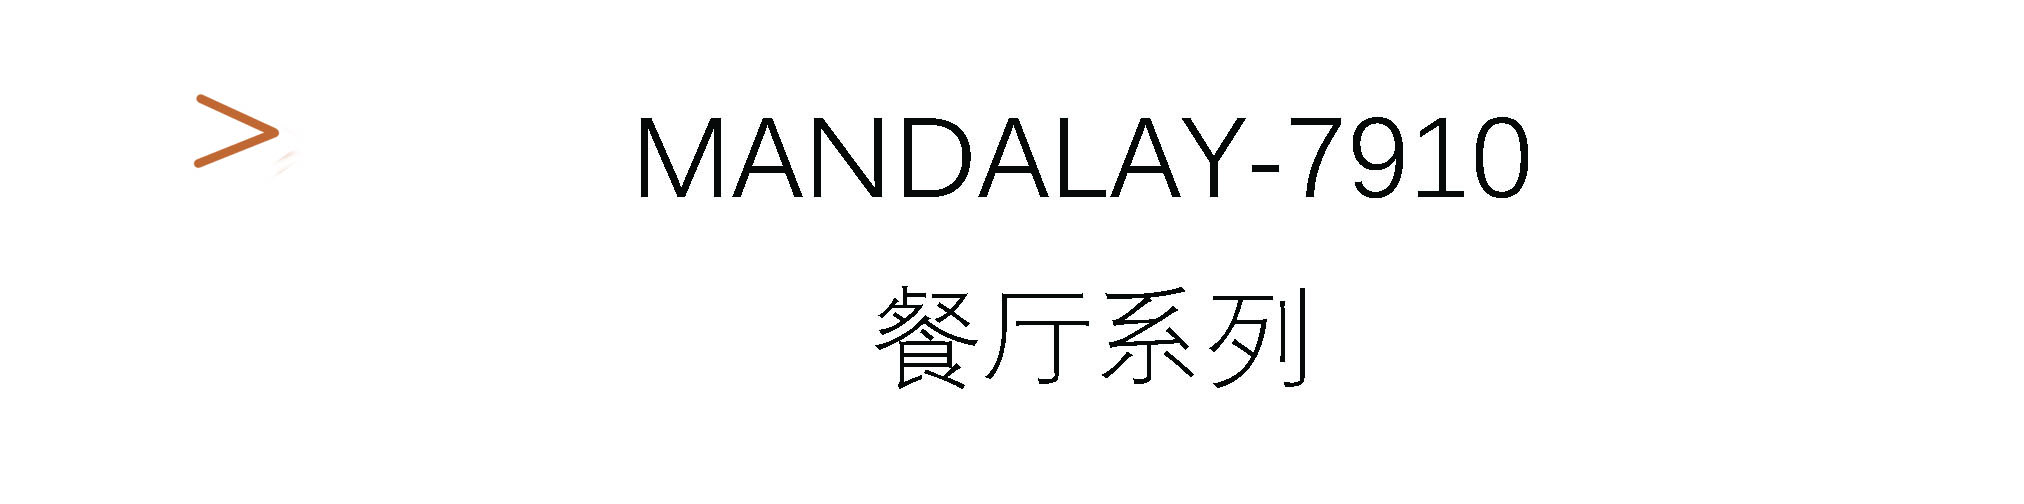 Mandalay-7910